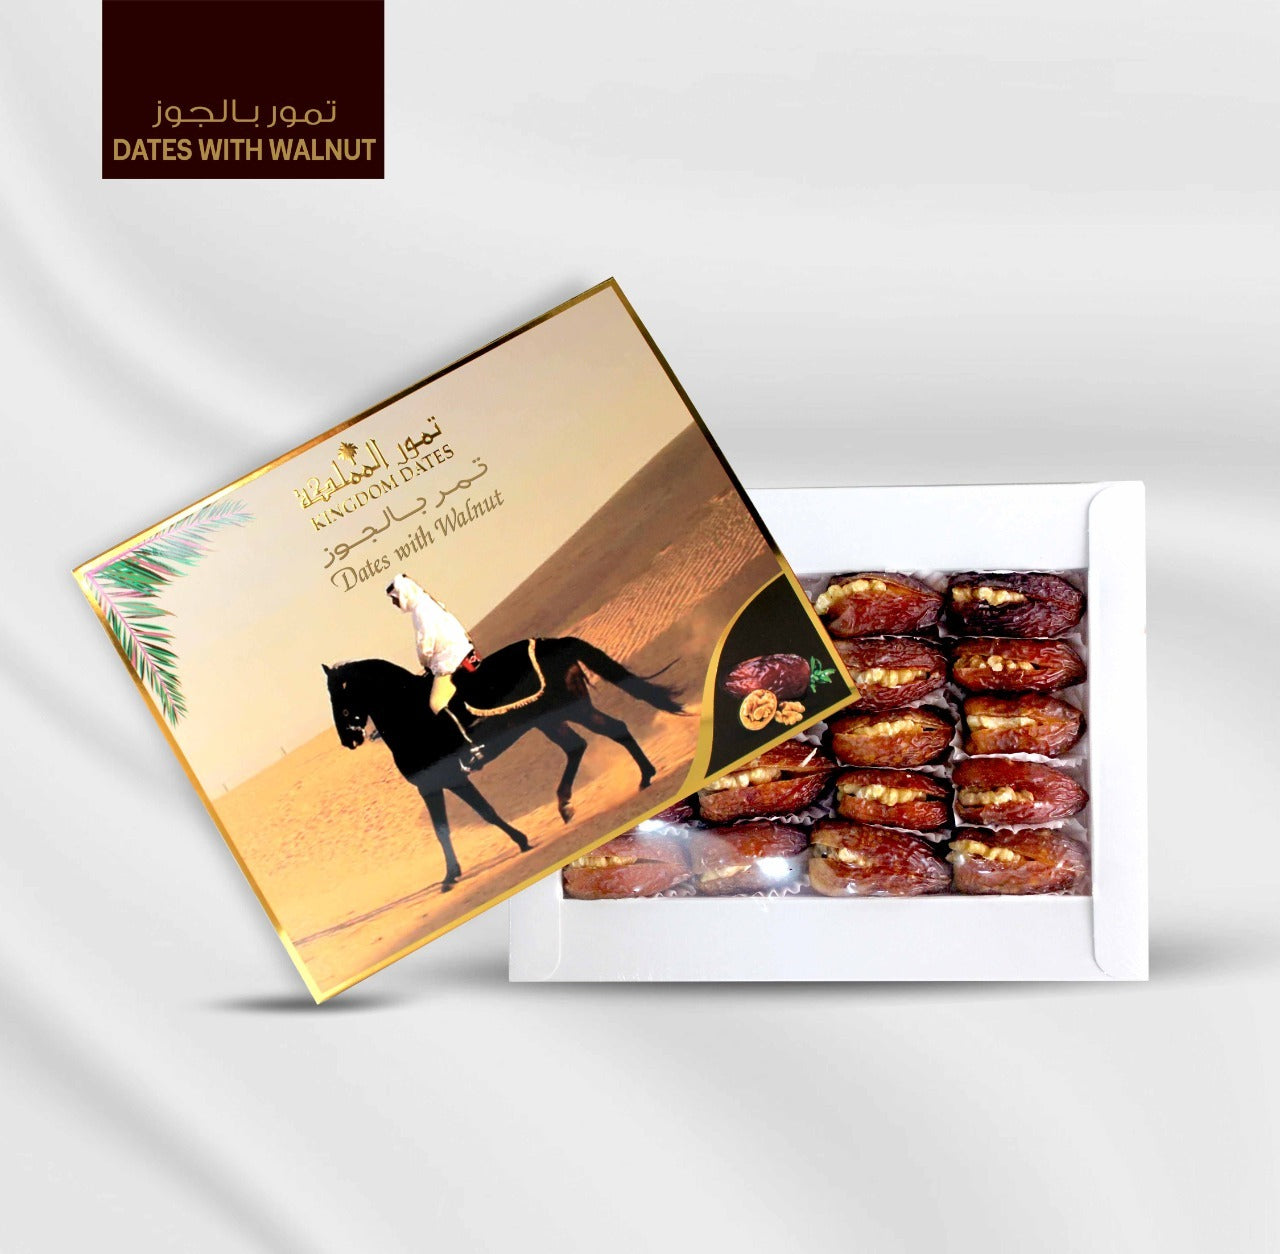 Dates with Walnut 250g - kingdom Dates UAE